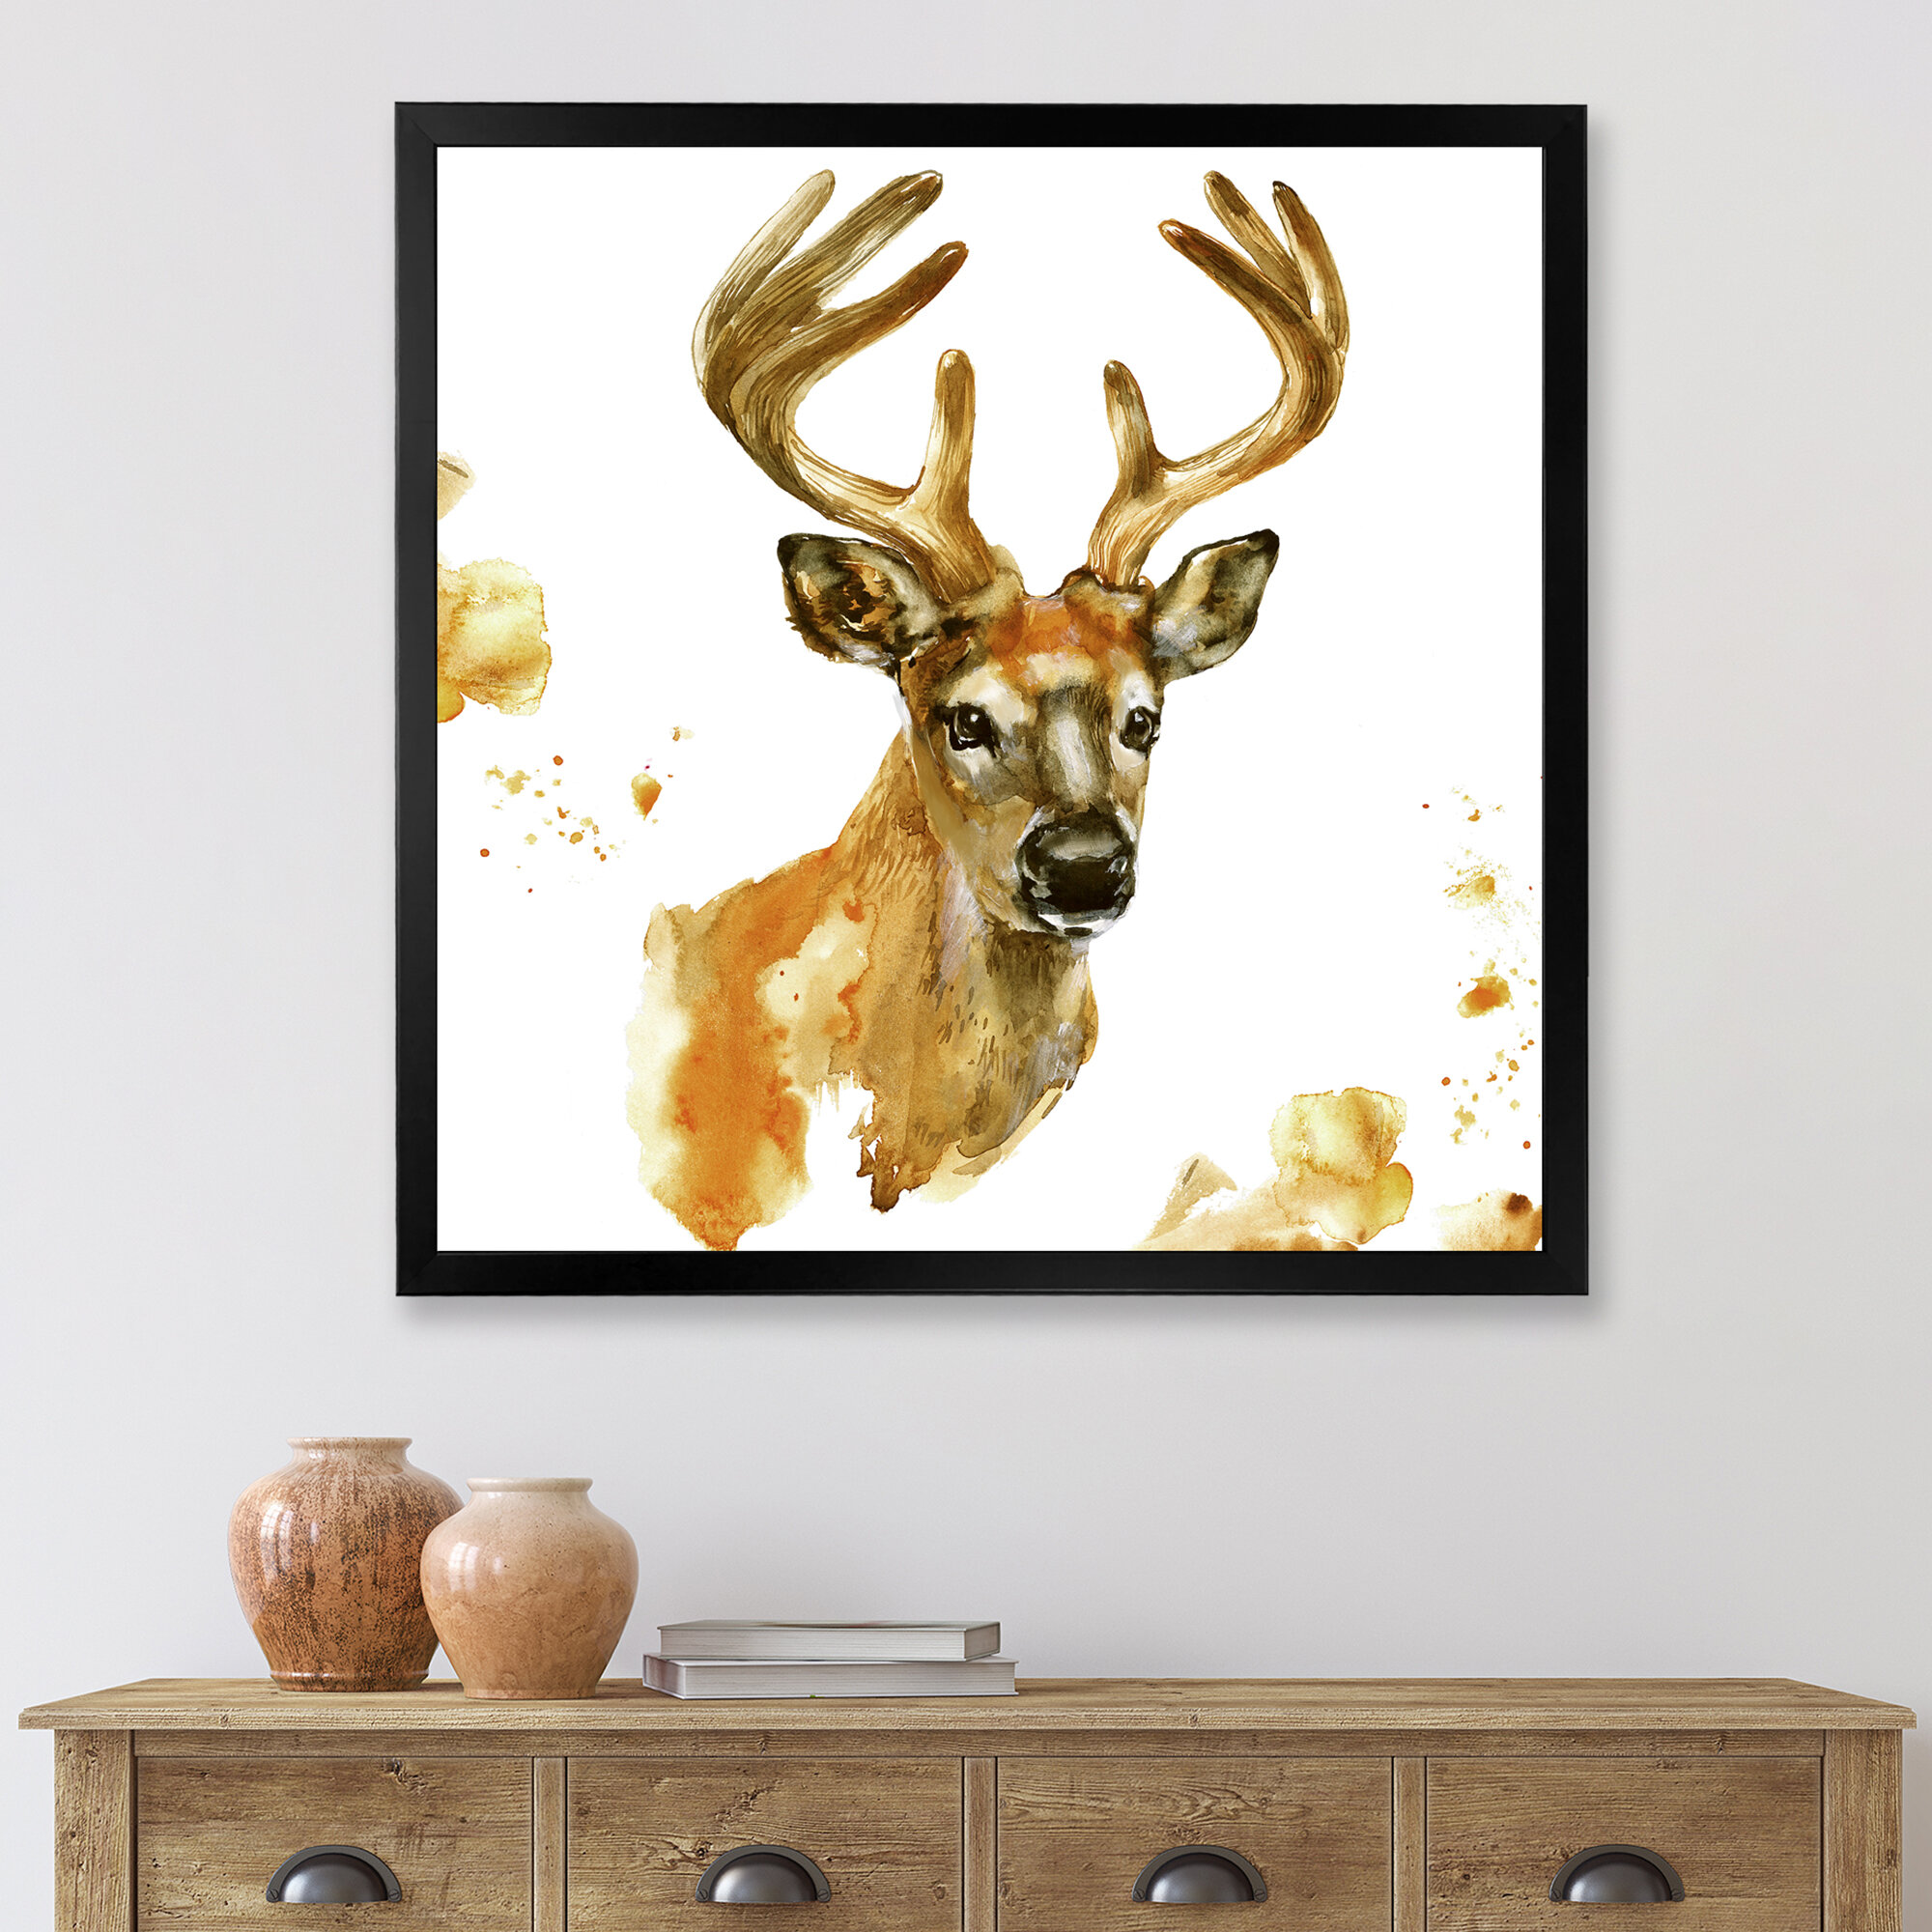 Designart Beautiful Deer With Big Horns - Animal Throw Pillow - 18x18